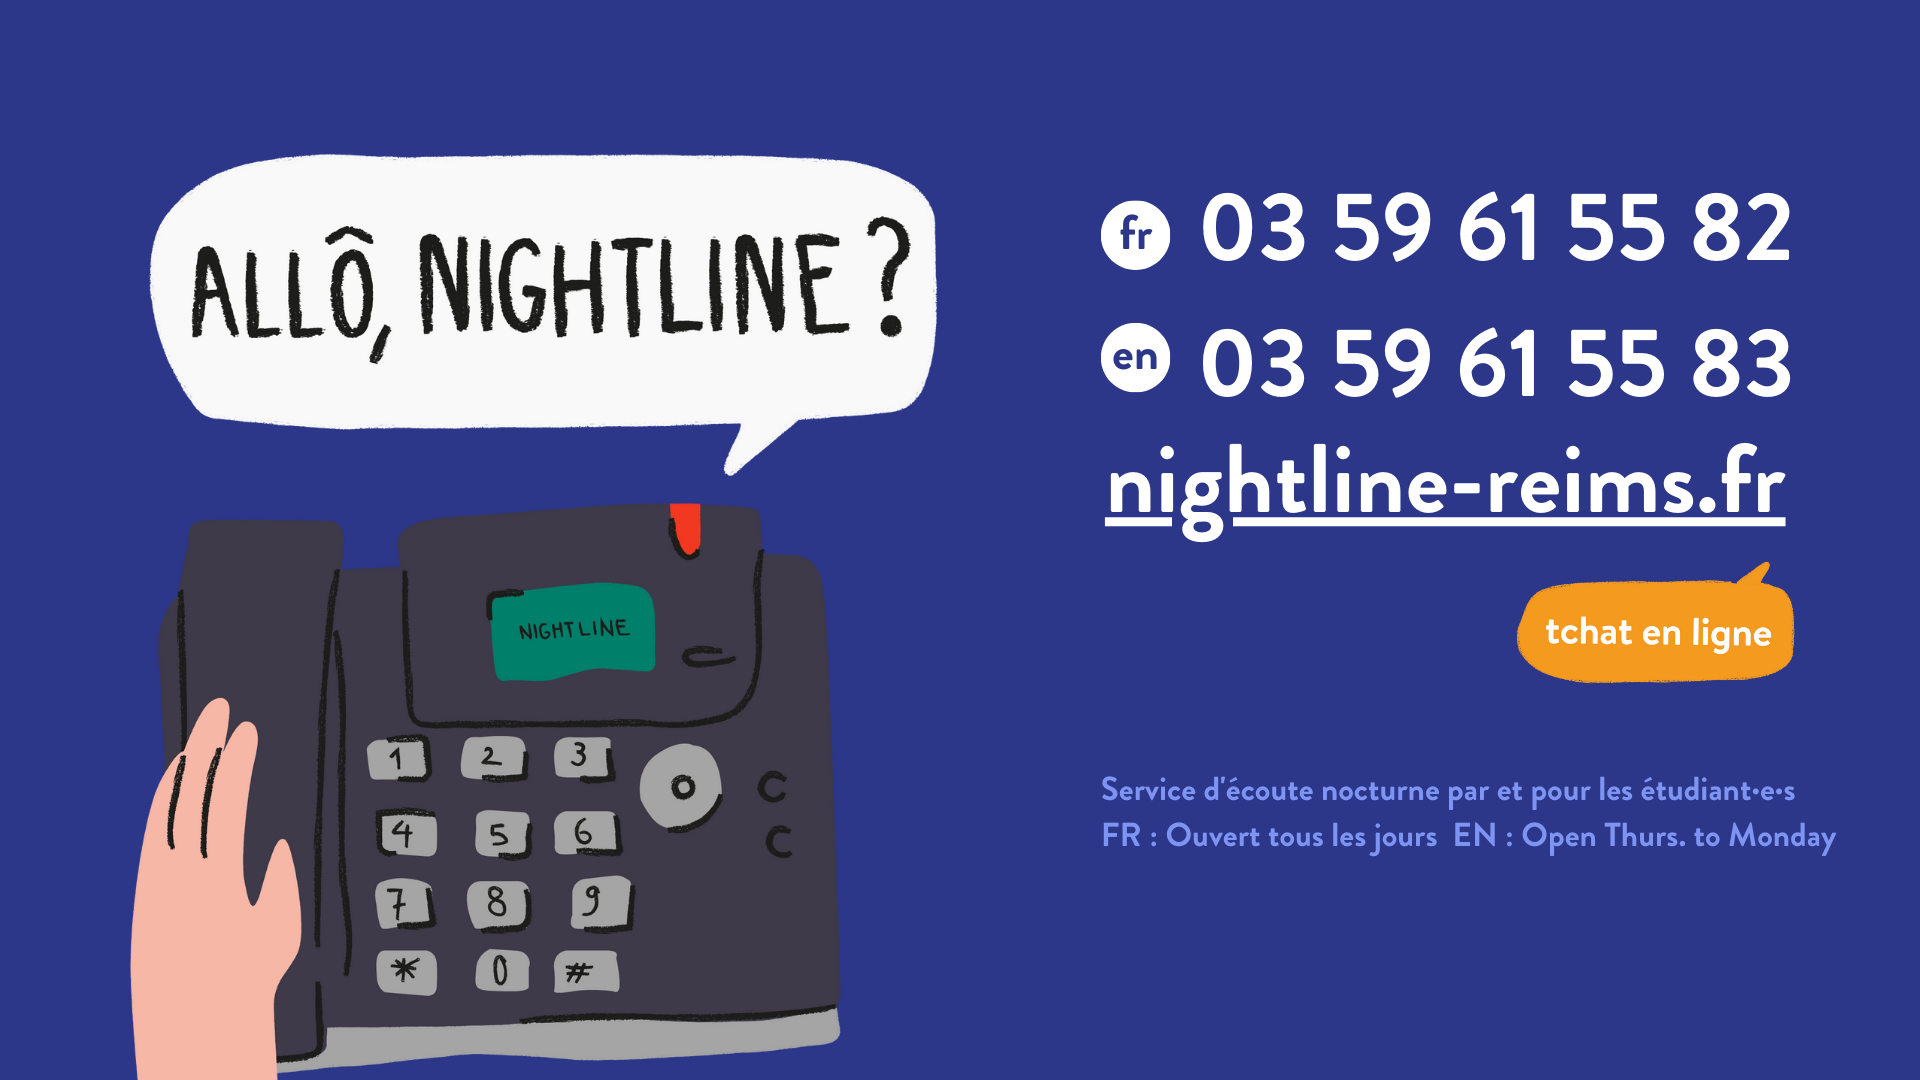 Nightline Reims, l’association qui t’accompagne pendant ta vie étudiante